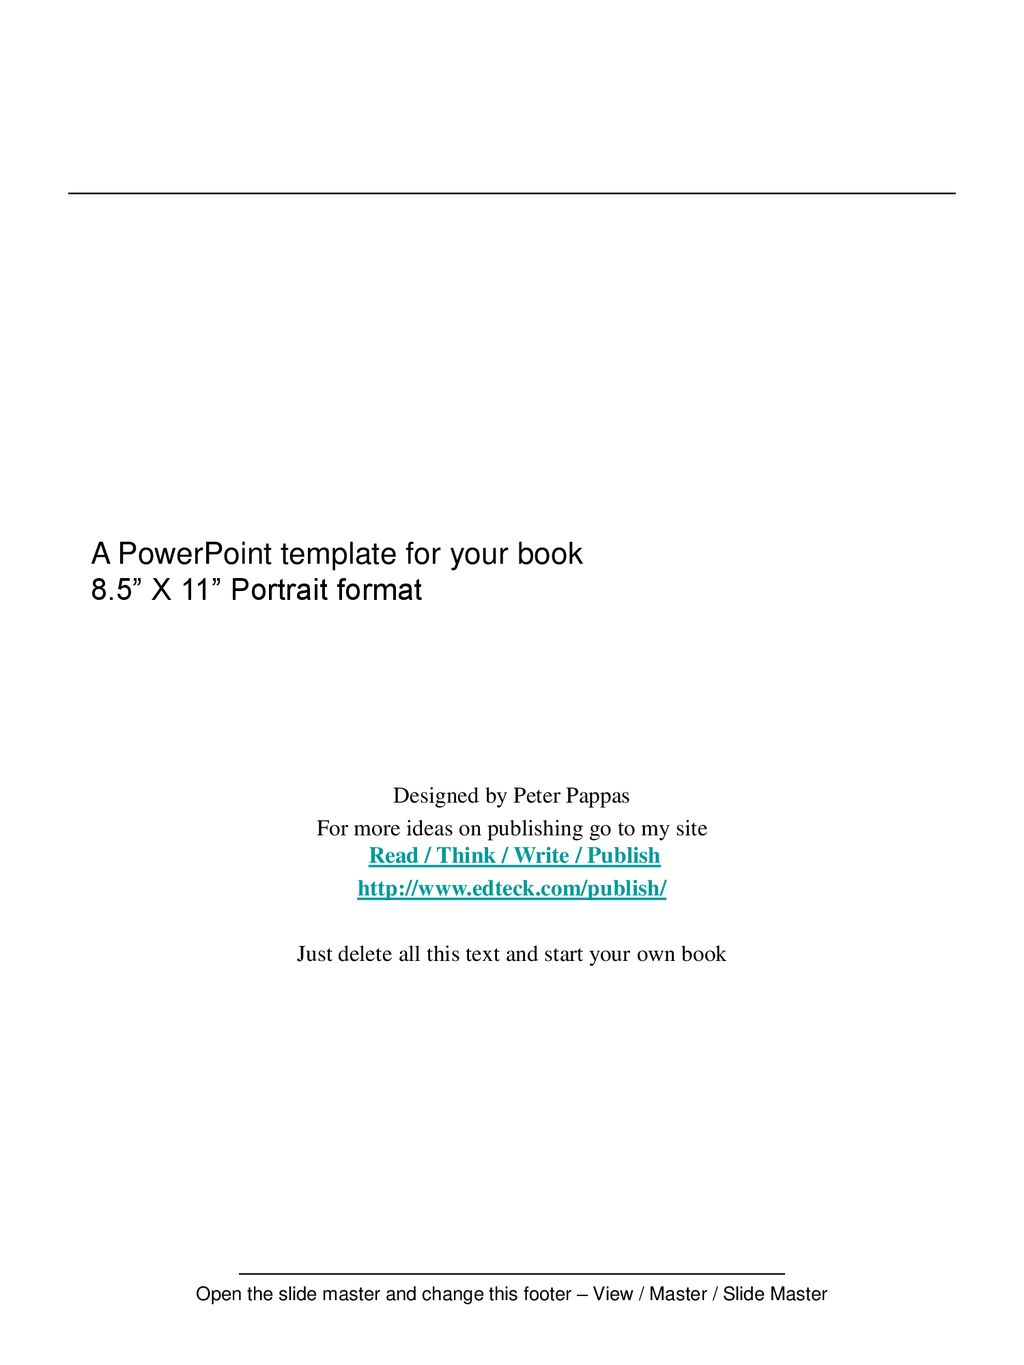 Bộ sưu tập 1000 Powerpoint templates 8.5 x 11 Miễn phí, đa dạng lựa chọn